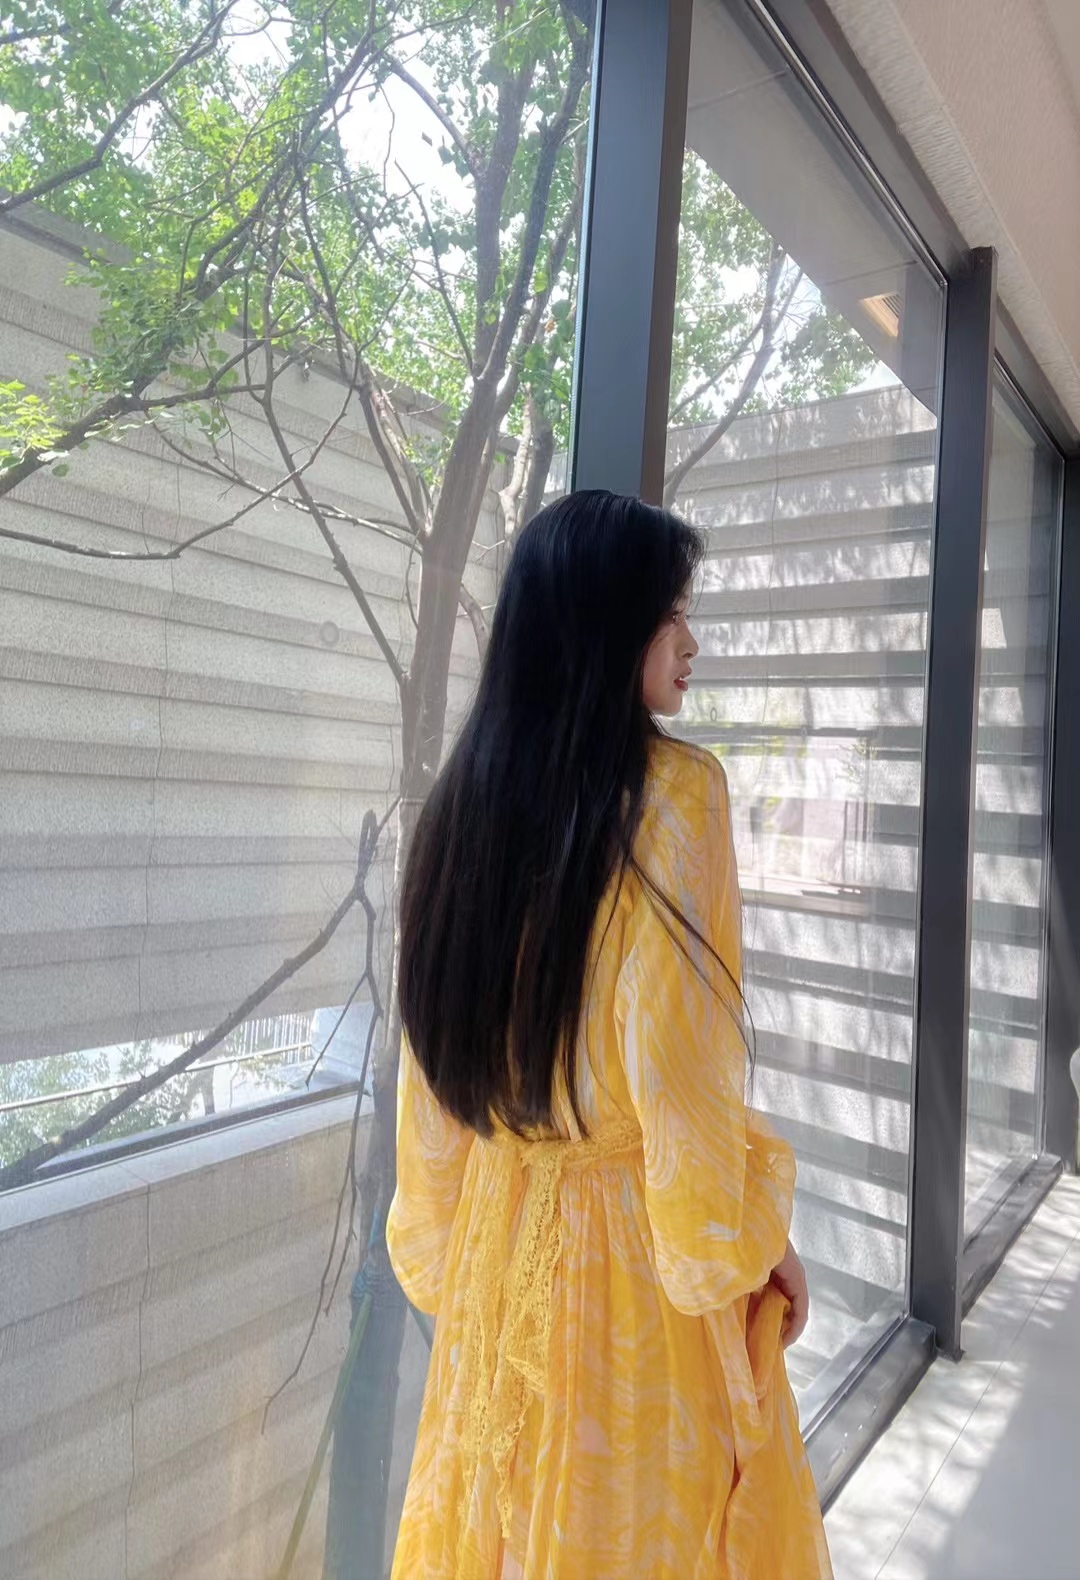 DOUBLE COLLECTION #SHENZHEN 专柜系列真丝连衣裙 OJSZ-0825 女装/女士精品 连衣裙 原图主图